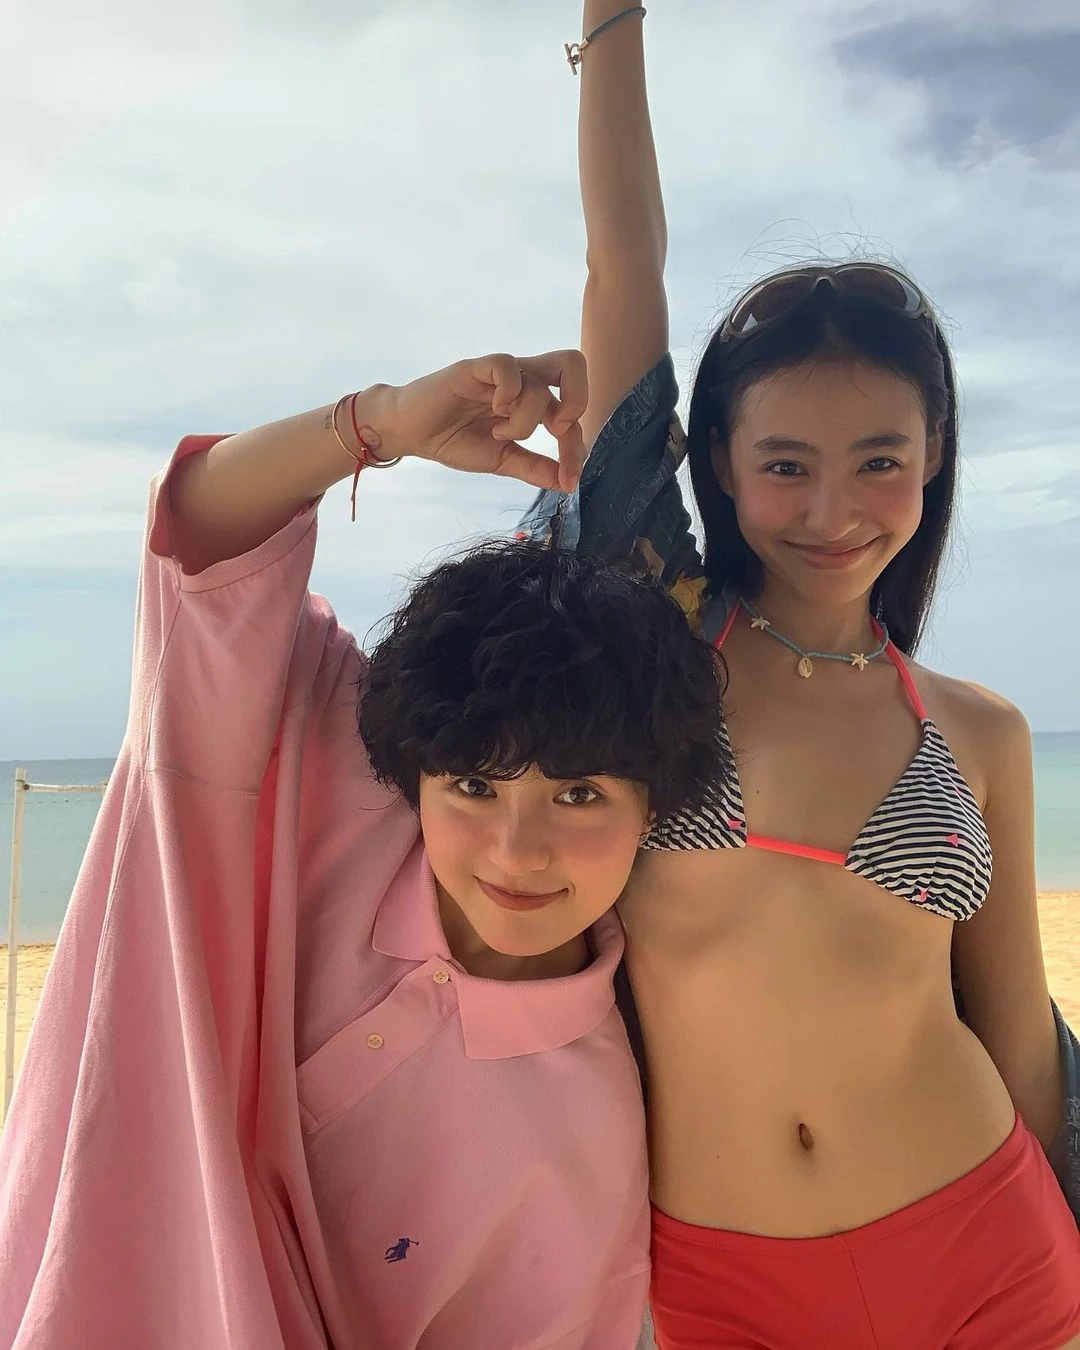 Minh Ngọc vừa đăng tải một bộ ảnh trên trang cá nhân chụp cùng người yêu khi đang vui chơi ở bãi biển.